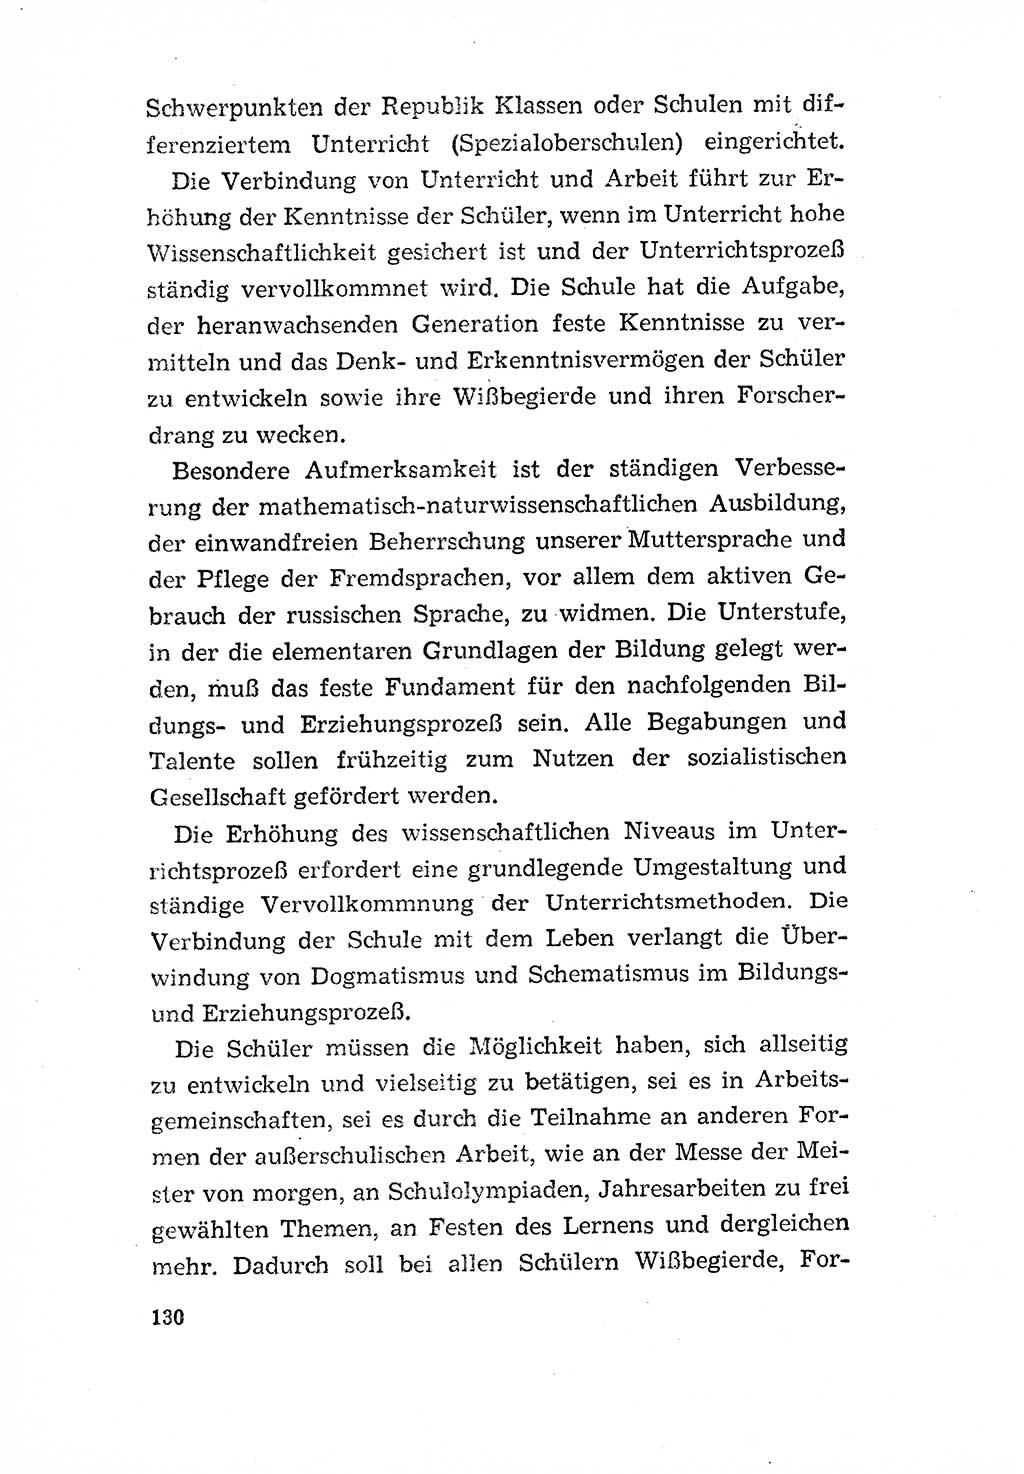 Programm der Sozialistischen Einheitspartei Deutschlands (SED) [Deutsche Demokratische Republik (DDR)] 1963, Seite 130 (Progr. SED DDR 1963, S. 130)